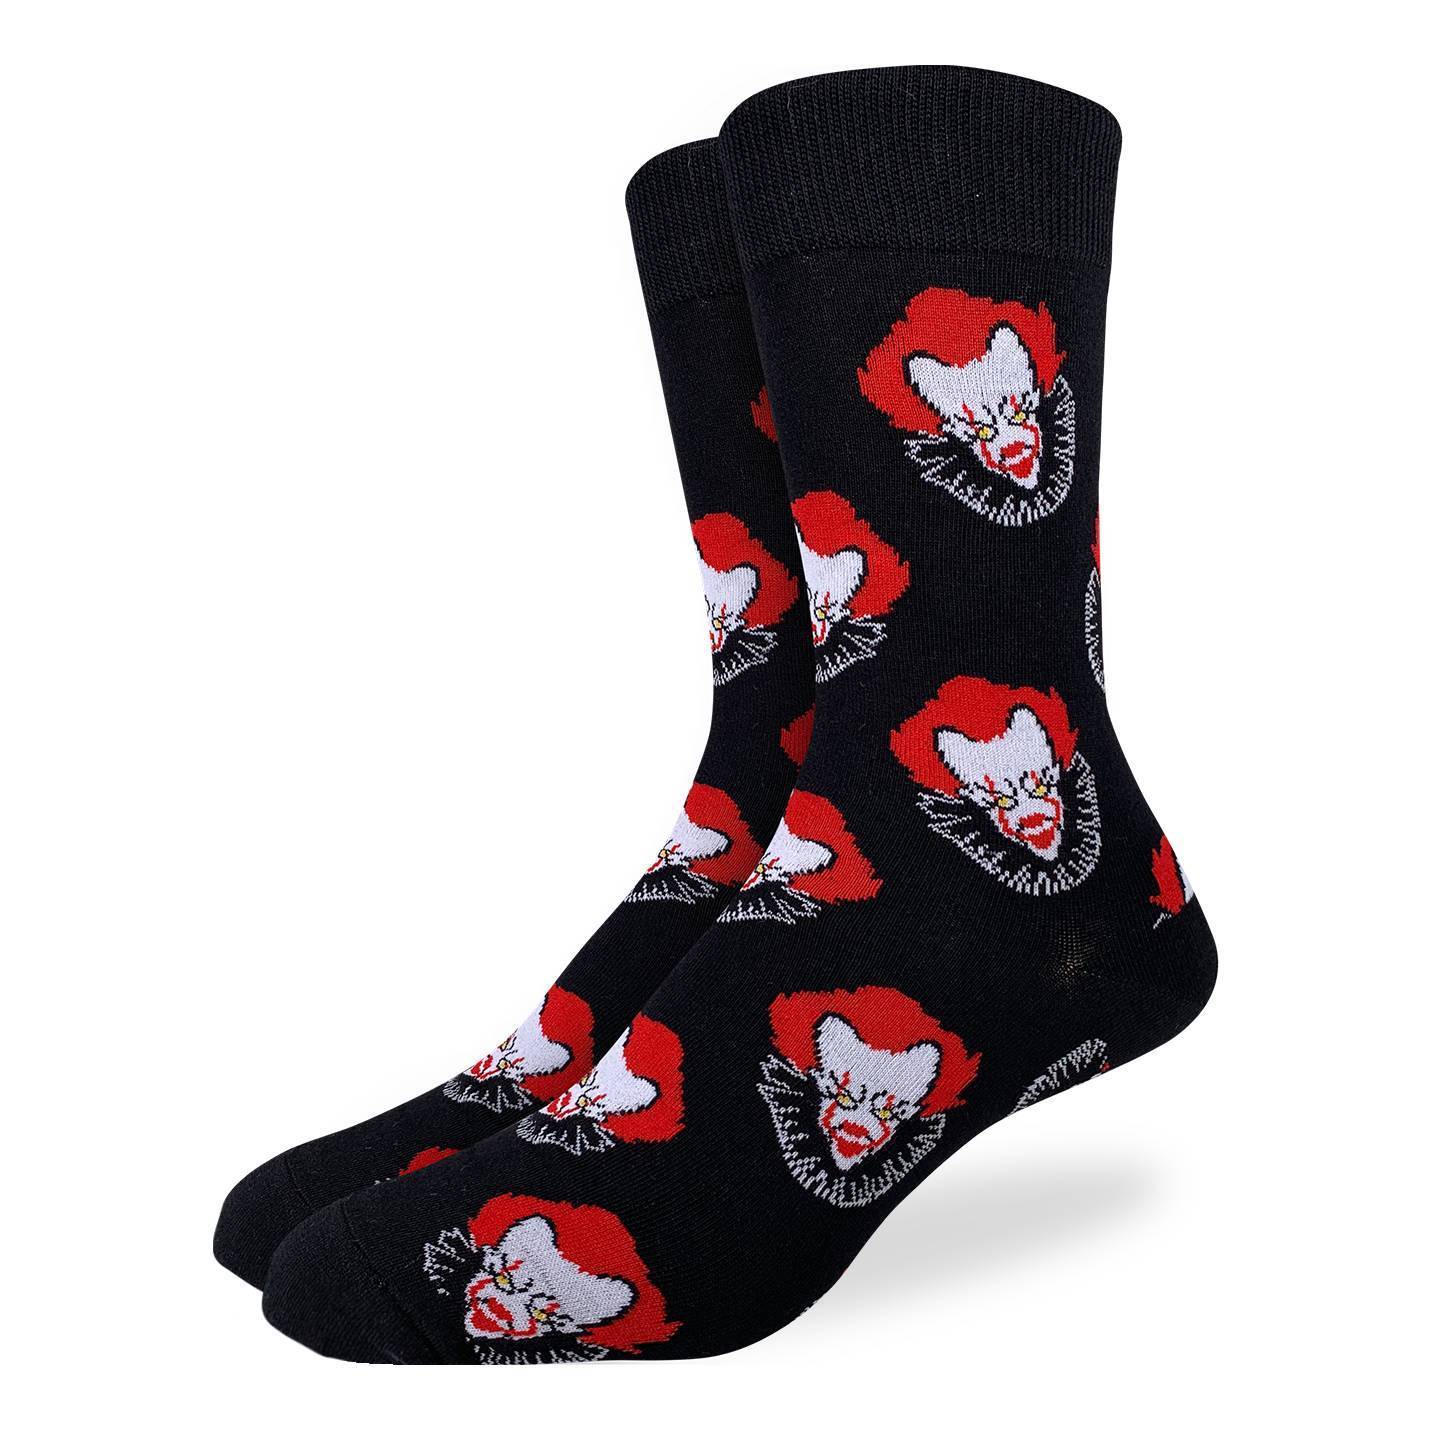 Men's Scary Clown Socks – Good Luck Sock